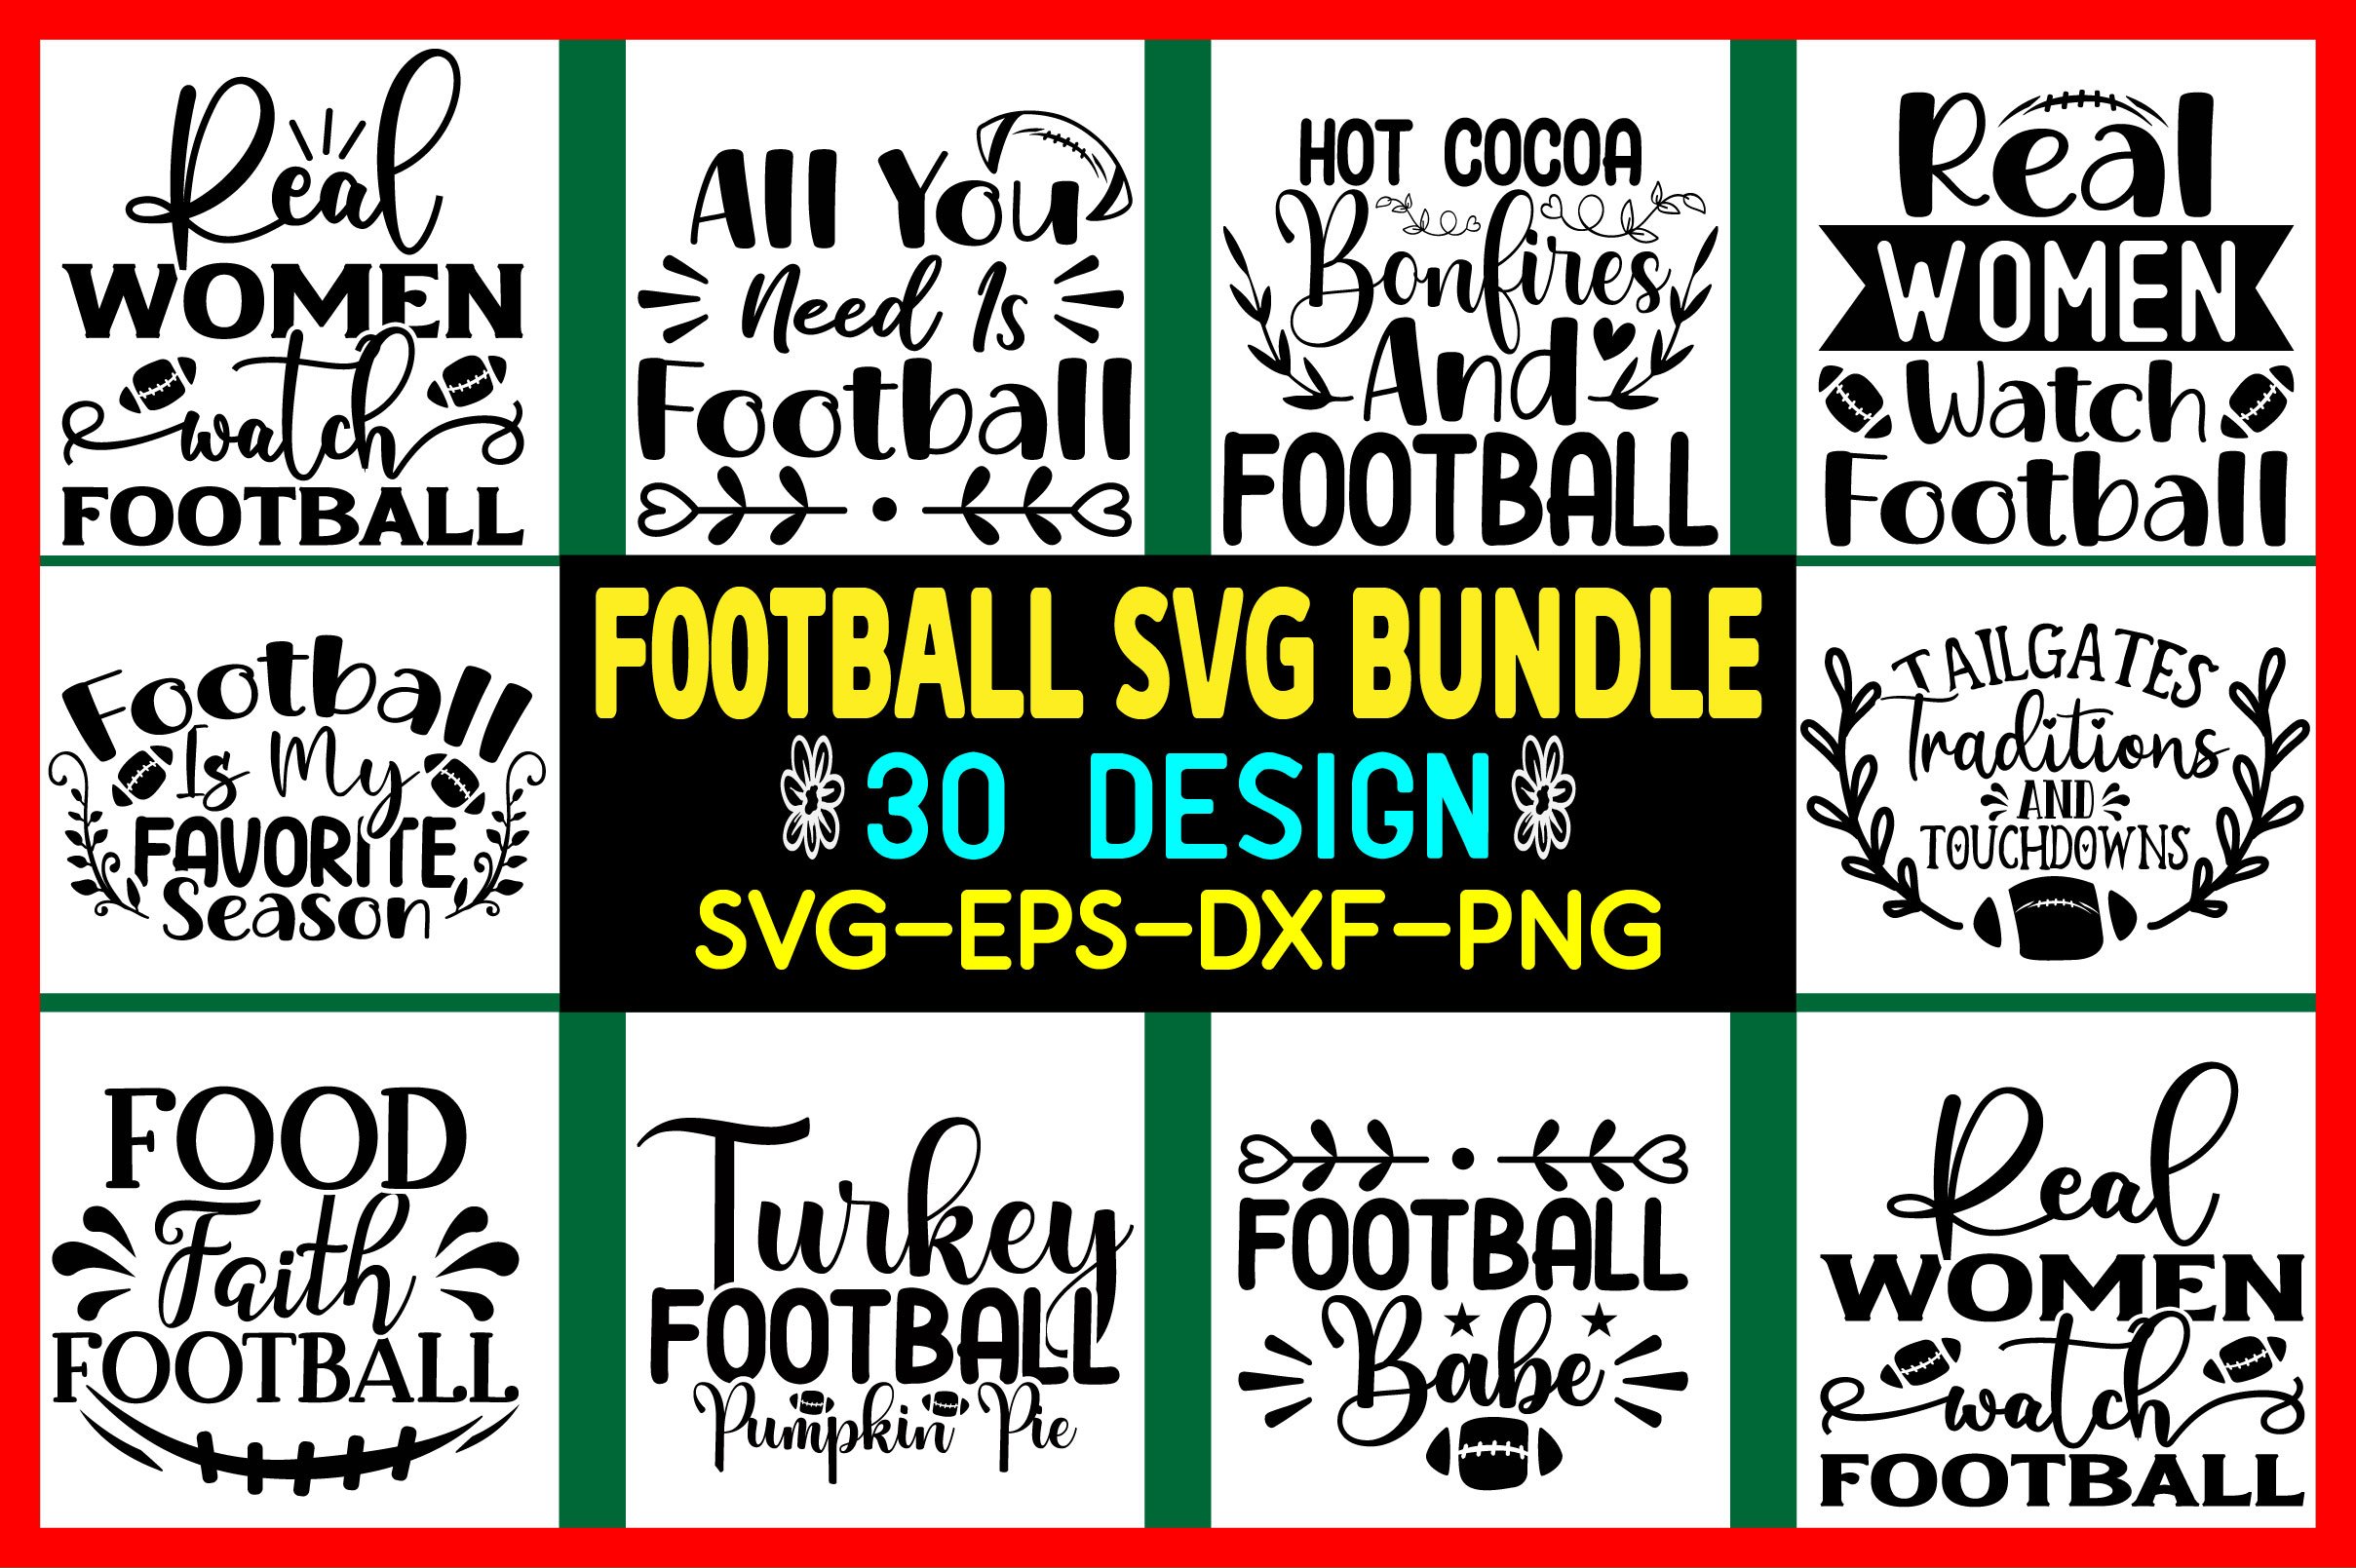 FOOTBALL SVG  Design  BUNDLE cover image.